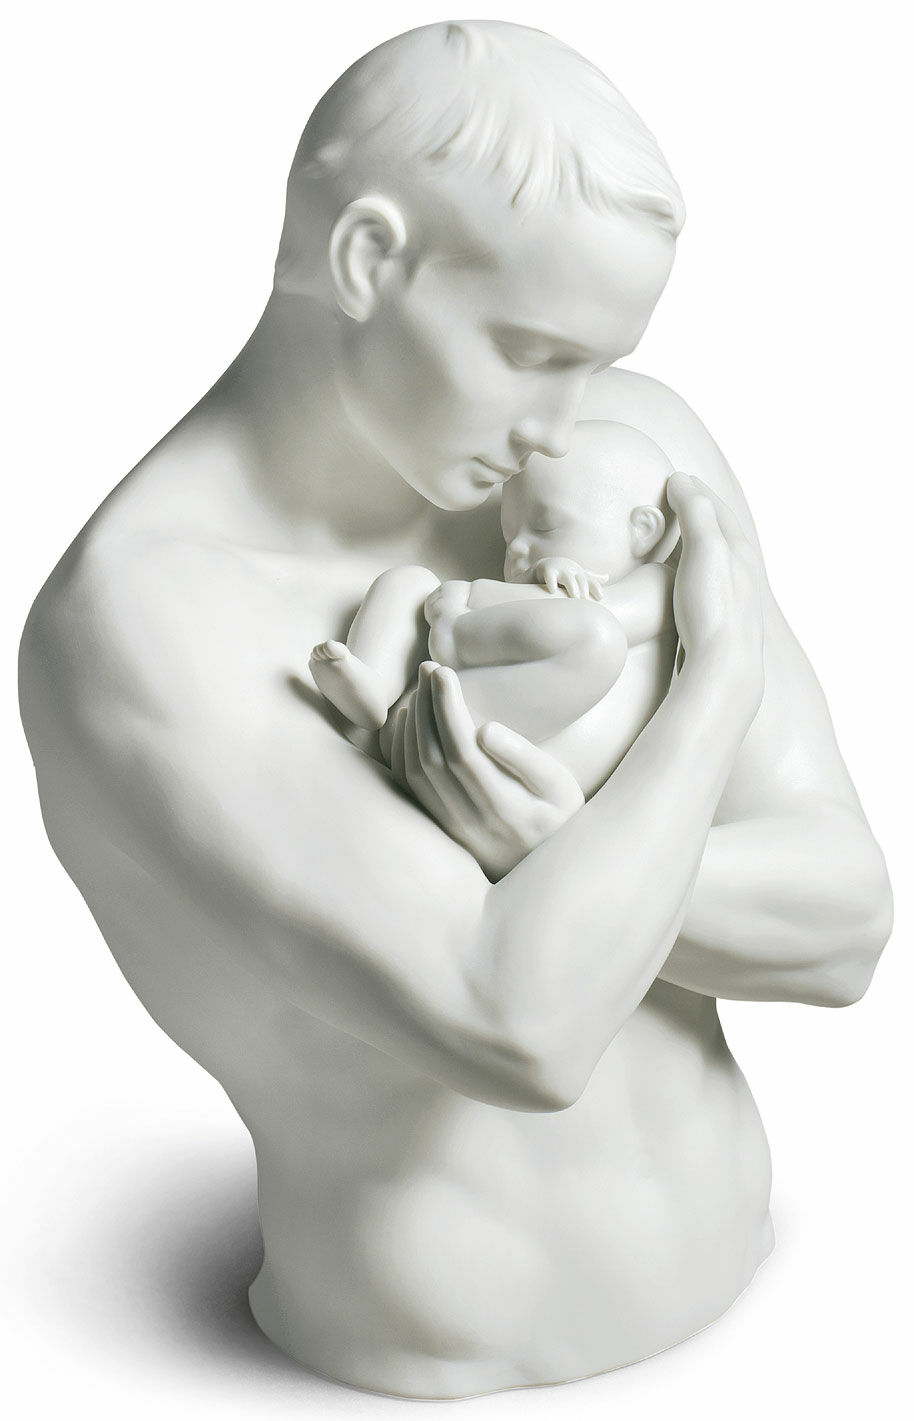 Porcelain sculpture "Paternal Pride" by Lladró